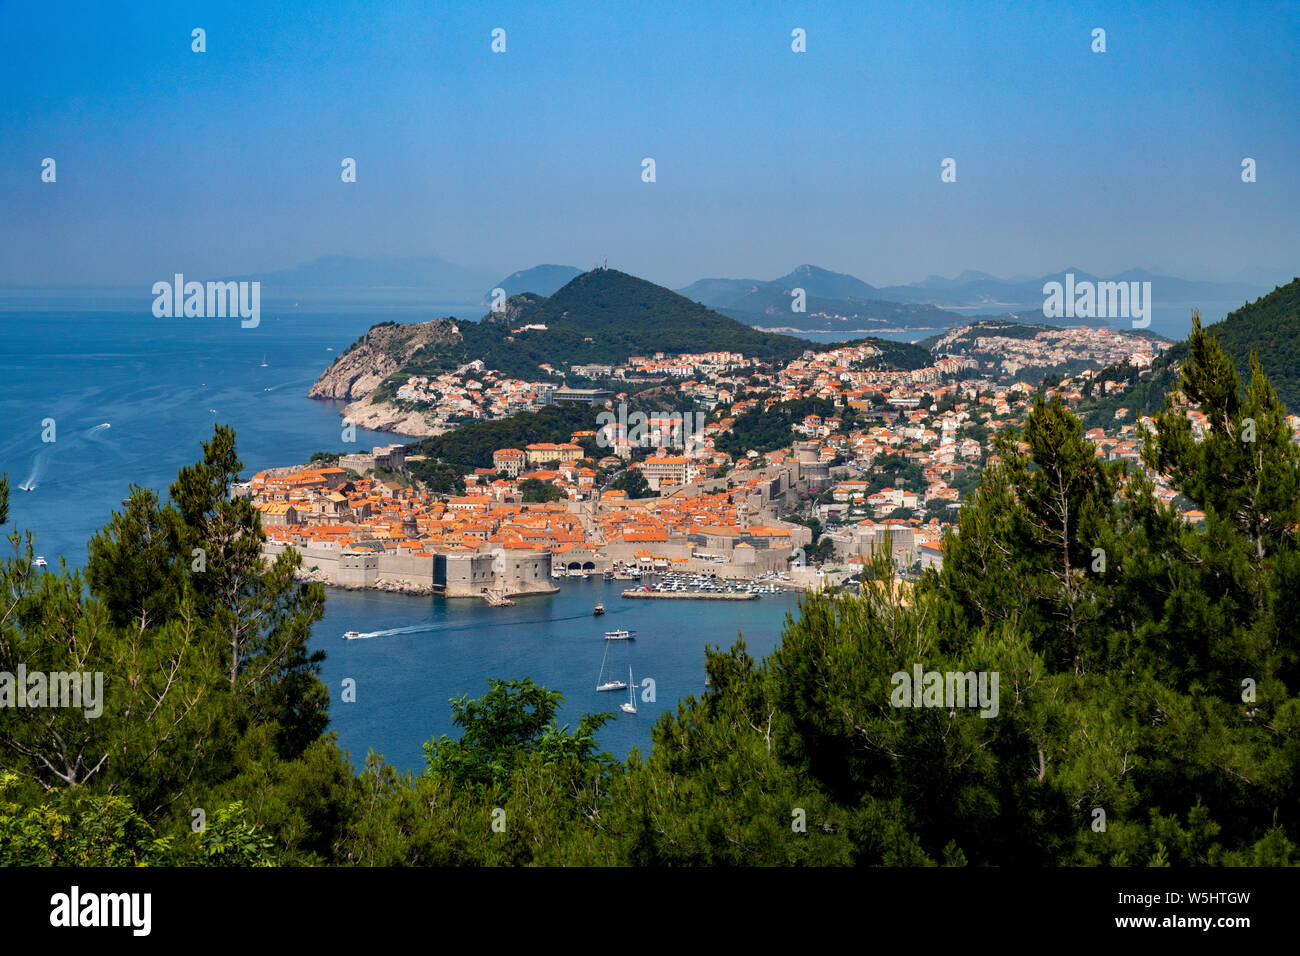 La vieille ville de Dubrovnik et les remparts de la ville, la Croatie Banque D'Images